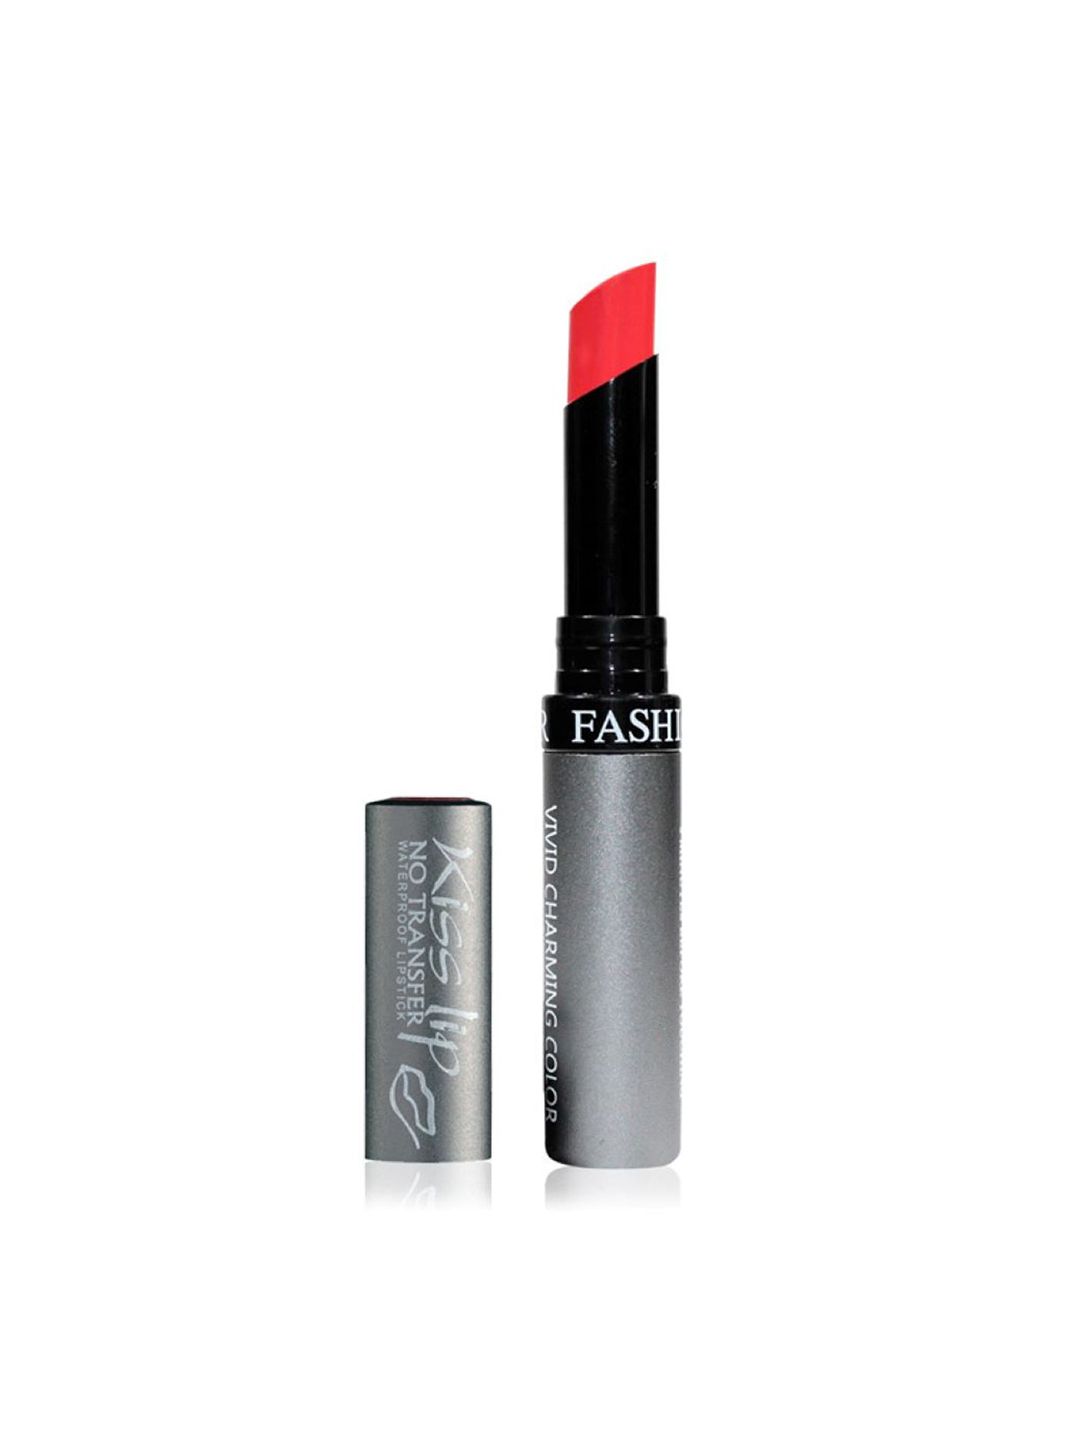 Fashion Colour Kiss Lip Vivid Charming Color No Transfer Lipstick - Coral 81 Price in India